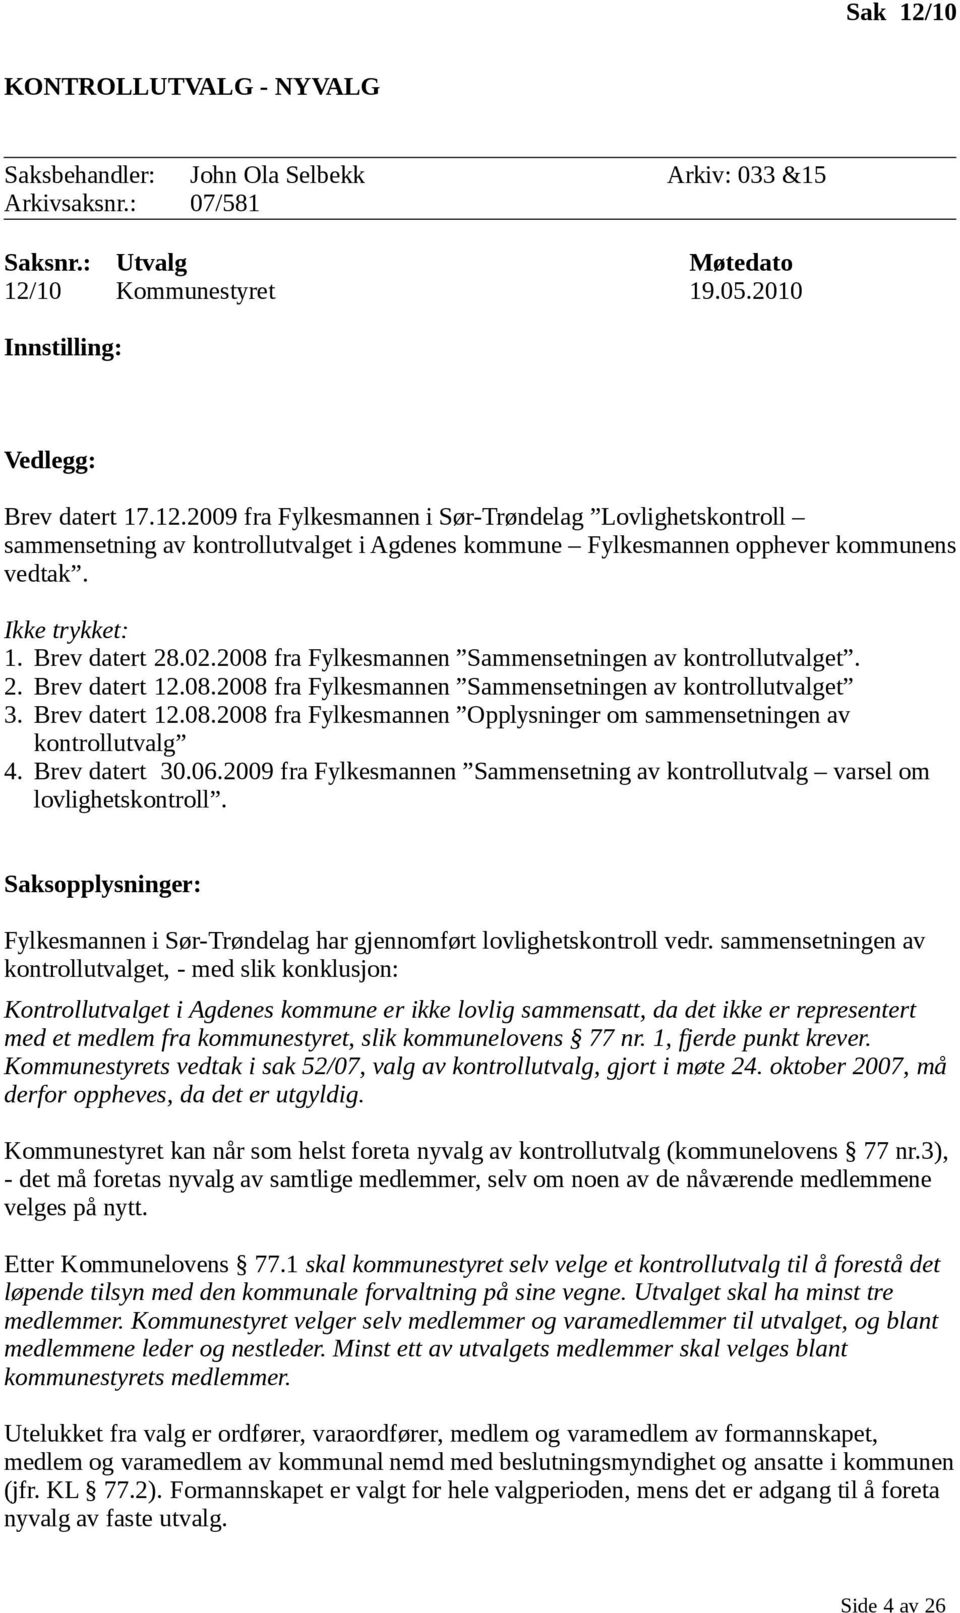 Brev datert 30.06.2009 fra Fylkesmannen Sammensetning av kontrollutvalg varsel om lovlighetskontroll. Saksopplysninger: Fylkesmannen i Sør-Trøndelag har gjennomført lovlighetskontroll vedr.